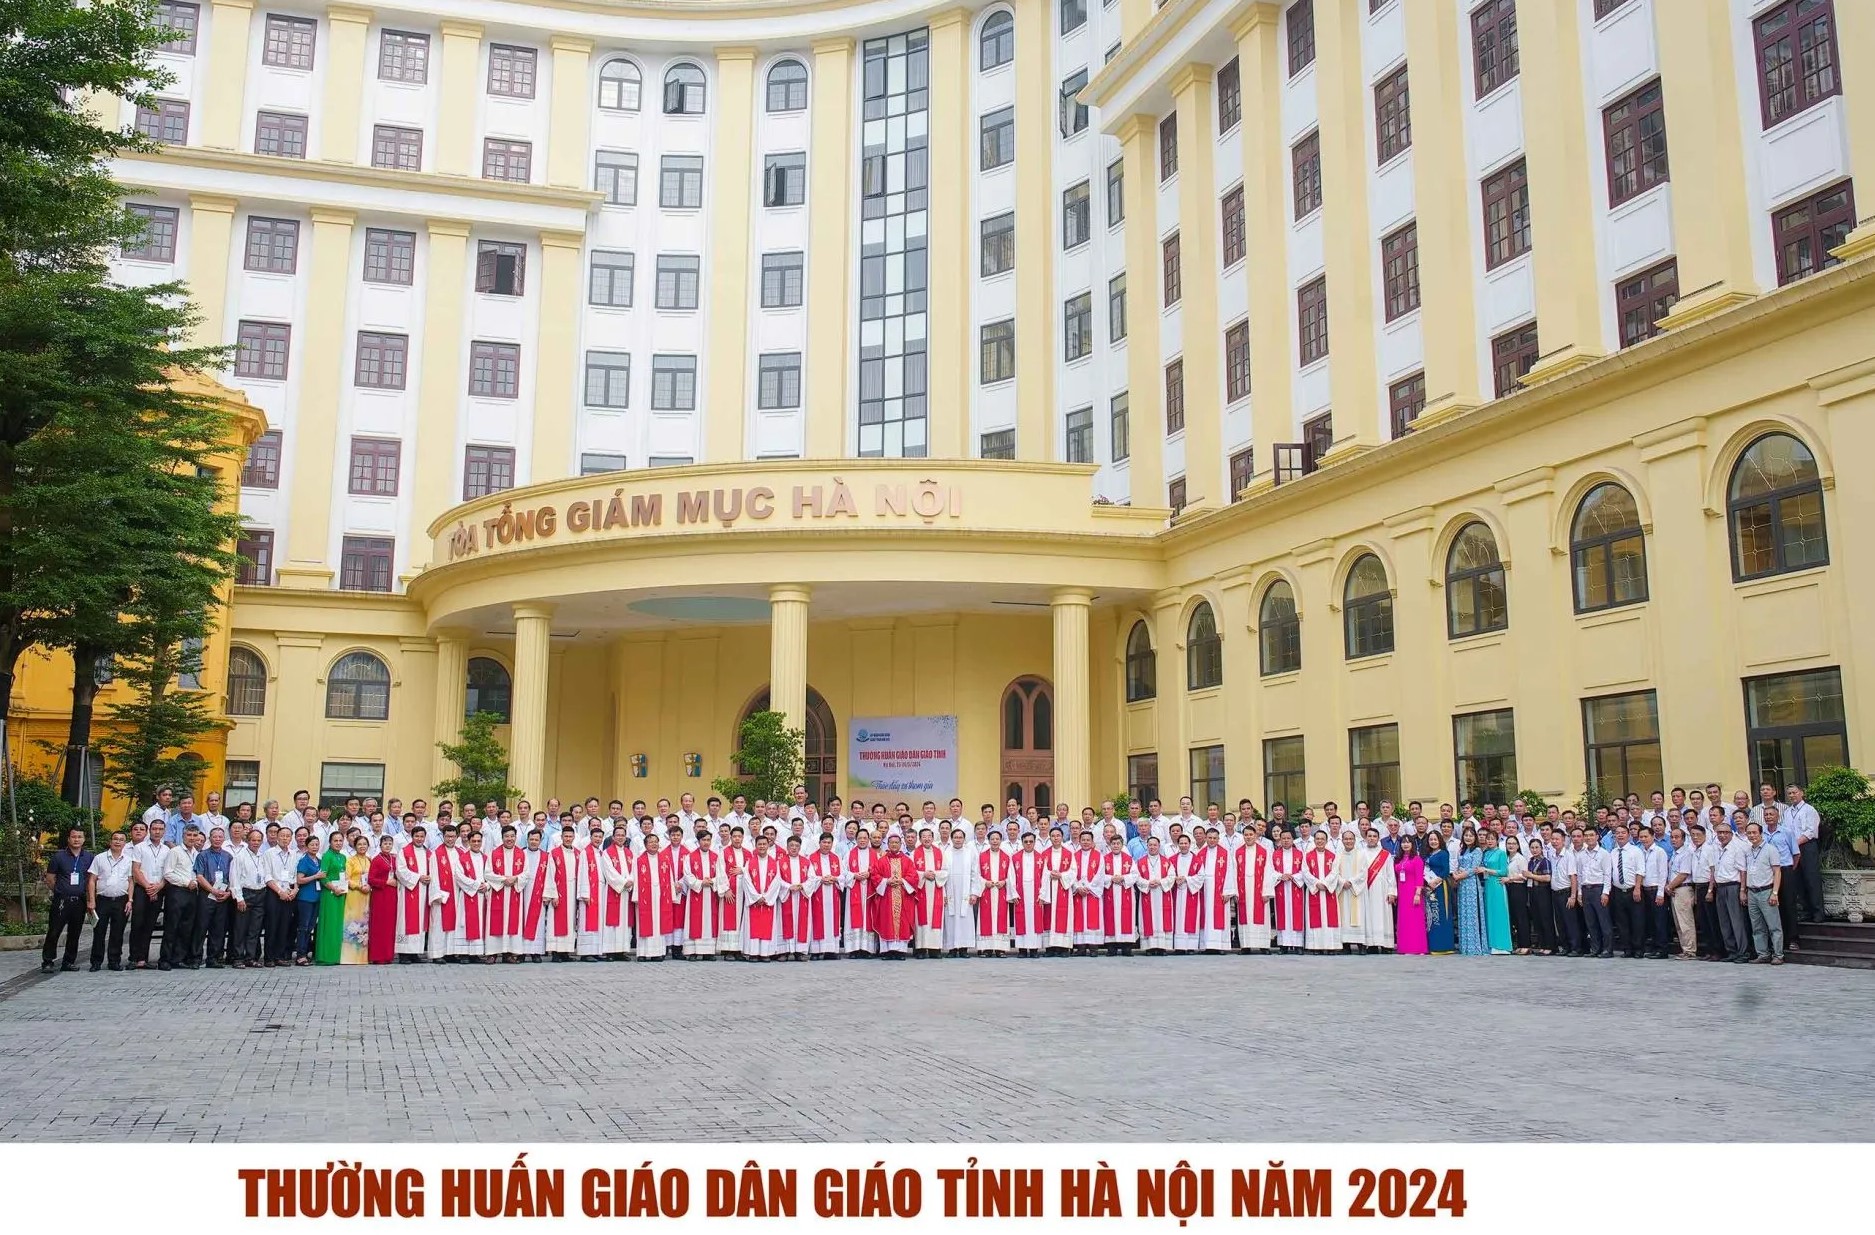 Ủy ban Giáo dân Giáo tỉnh Hà Nội thường huấn năm 2024: Người giáo dân làm tông đồ với tinh thần tham gia đồng trách nhiệm